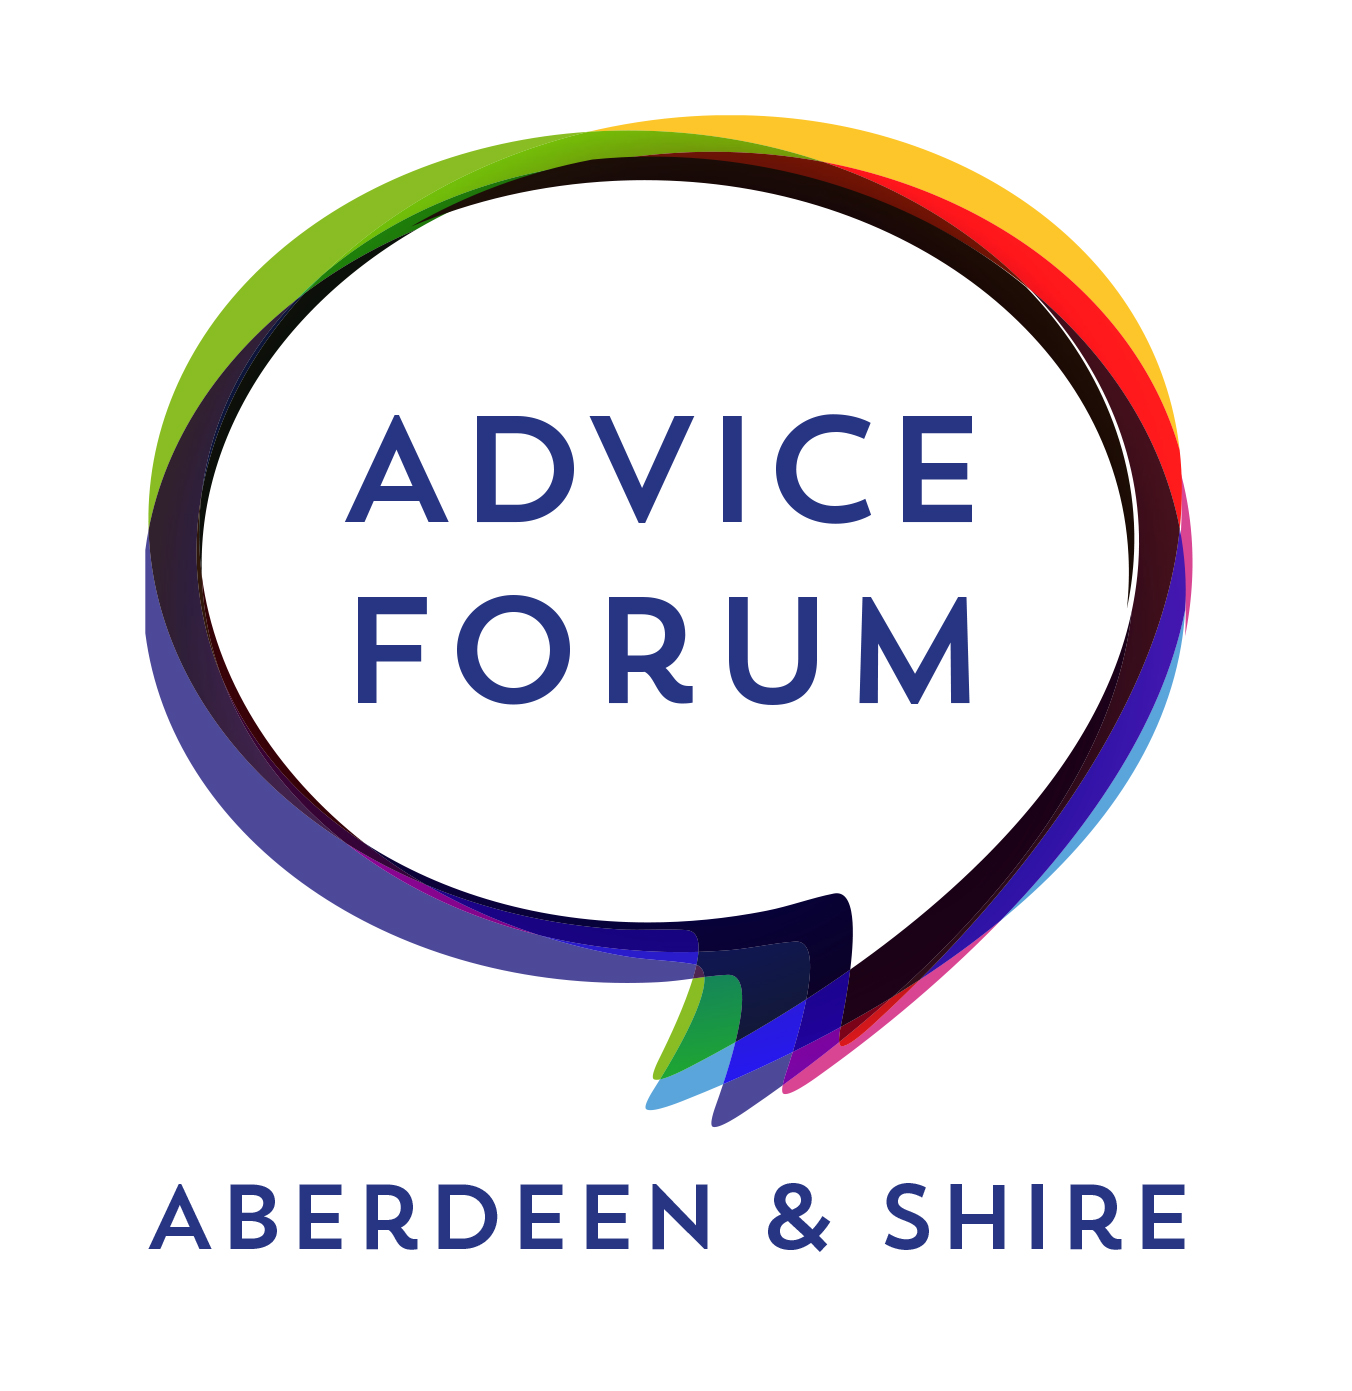 Aberdeen & Aberdeenshire Advice Forum Logo